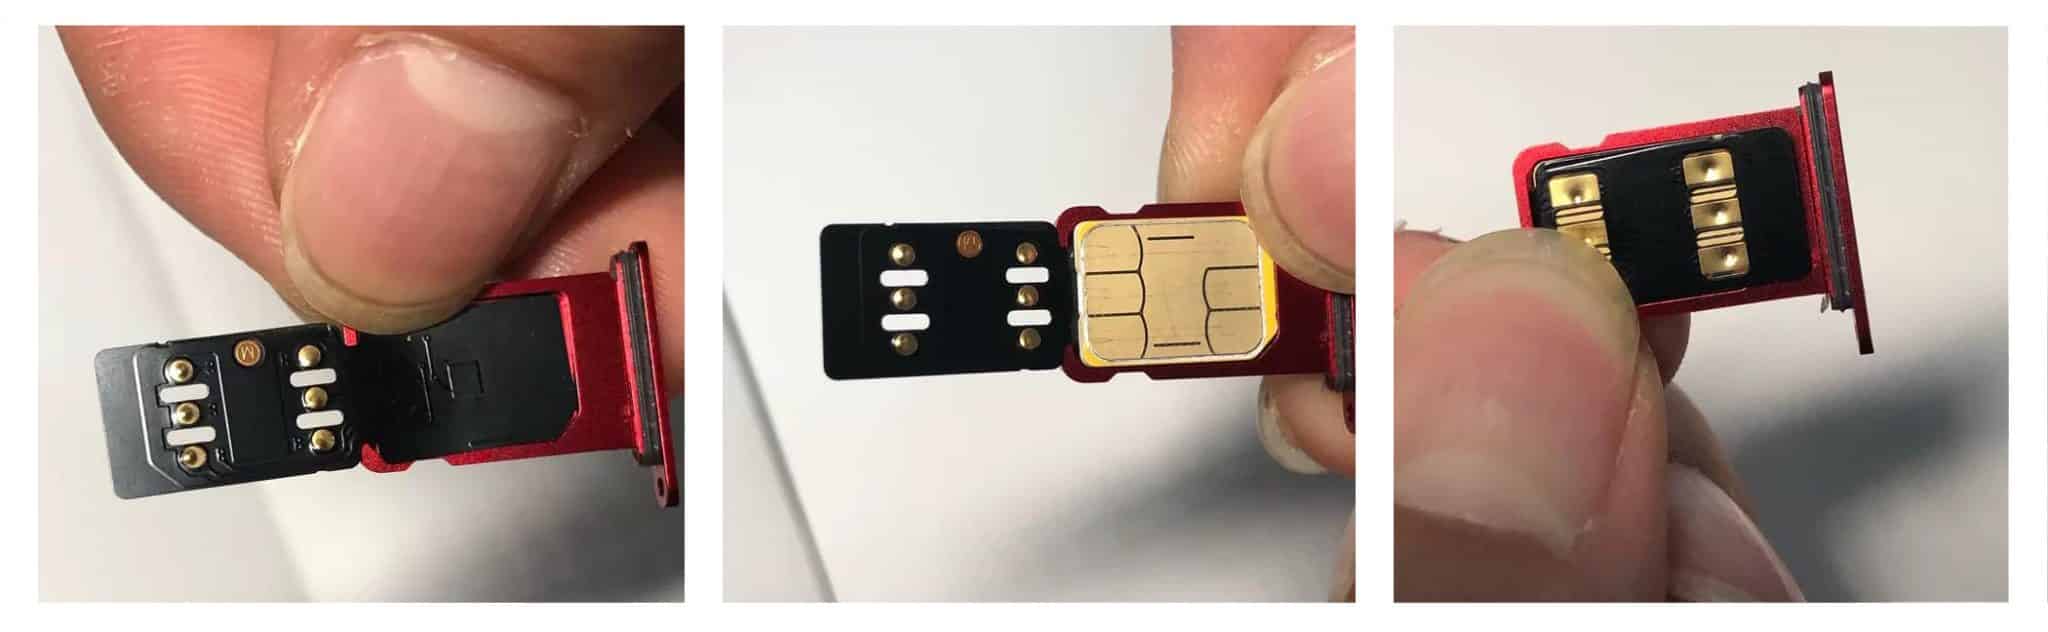 How toinstall R-sim 15 unlock card